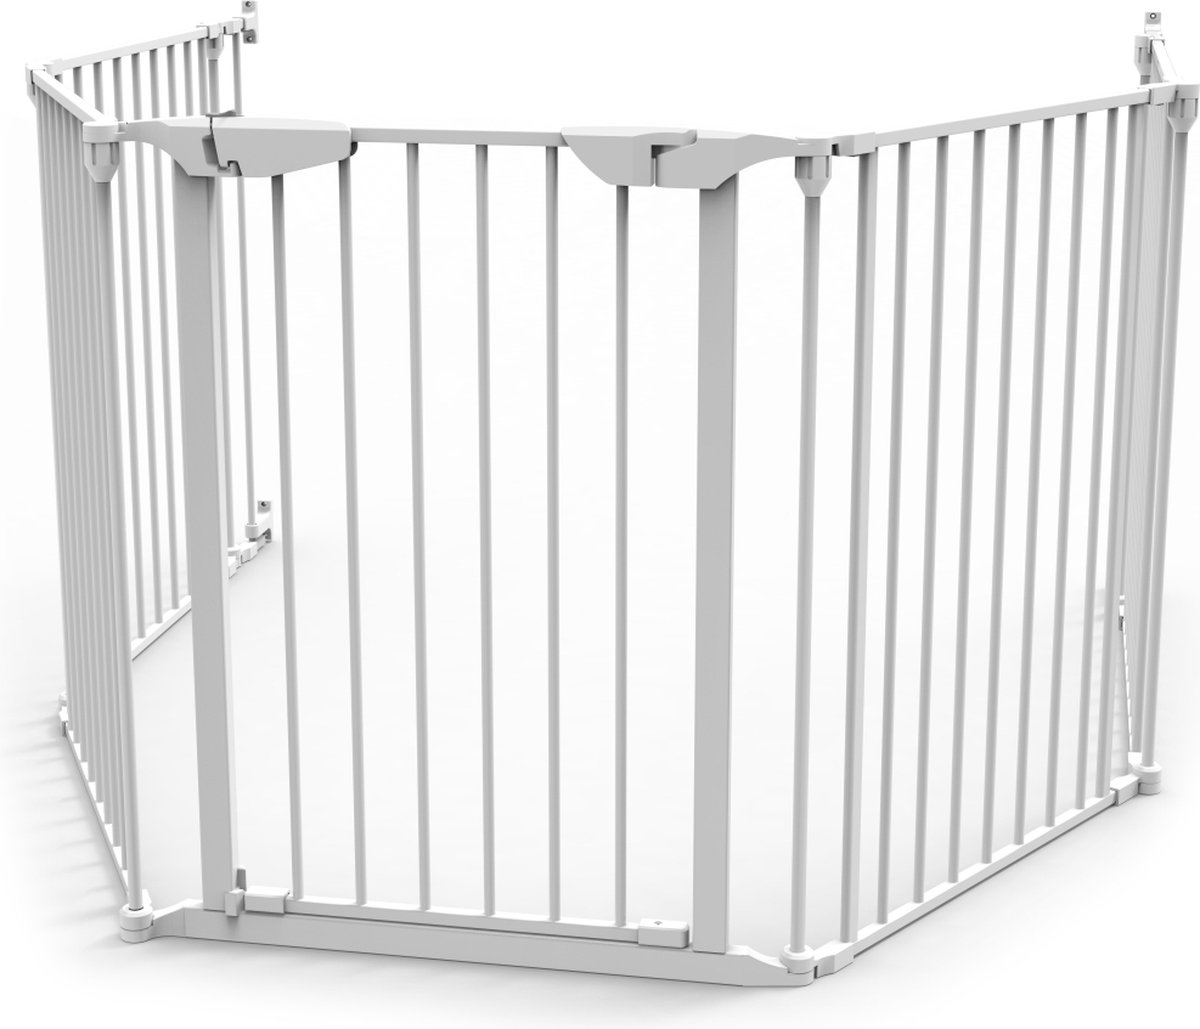 Barriere de securite enfant 310cm 5 panneaux